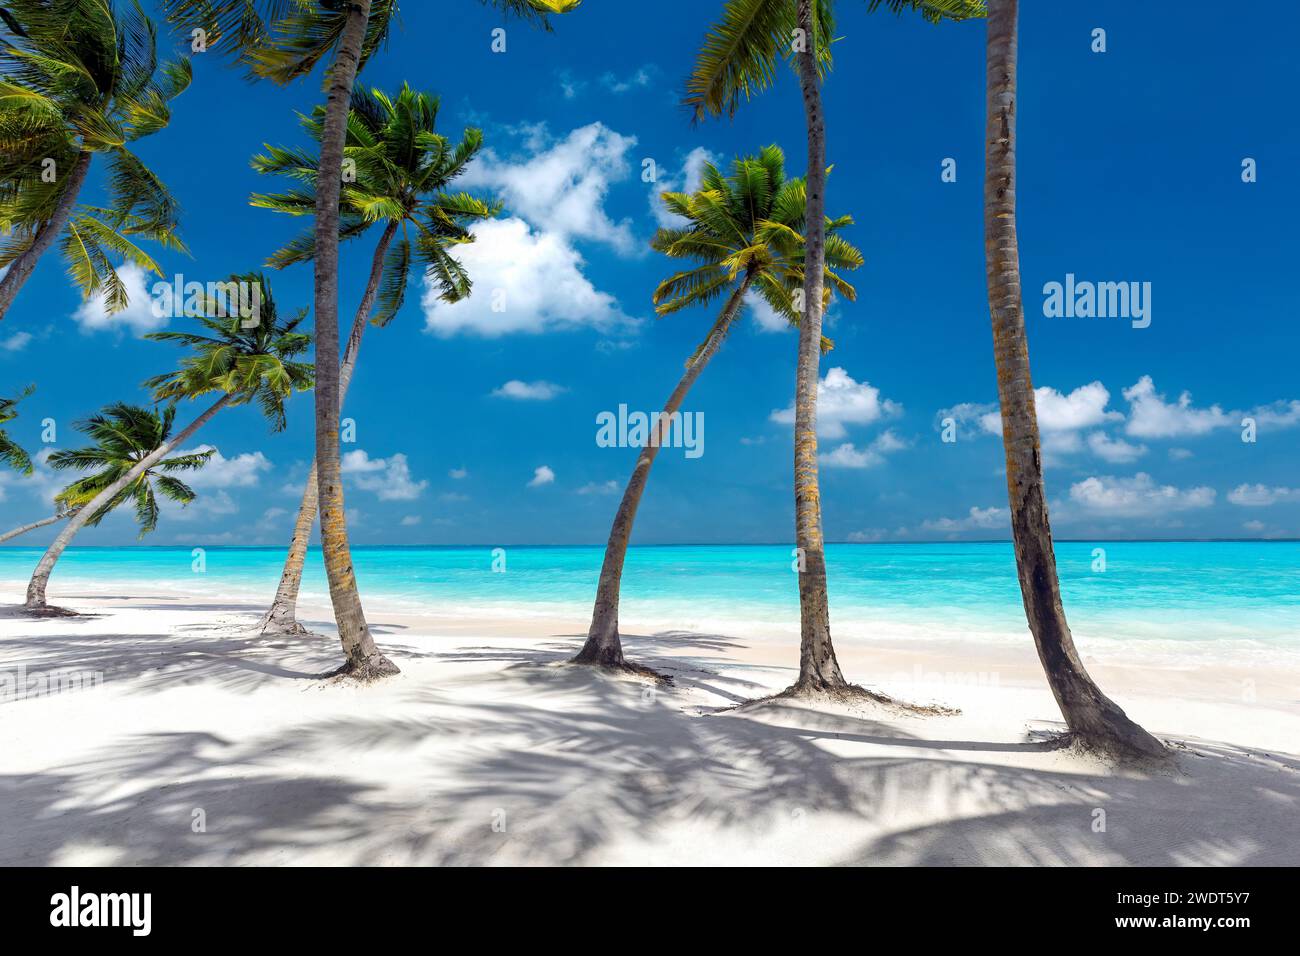 Plage des Maldives, palmiers sur plage de sable blanc, Maldives, Océan Indien, Asie Banque D'Images